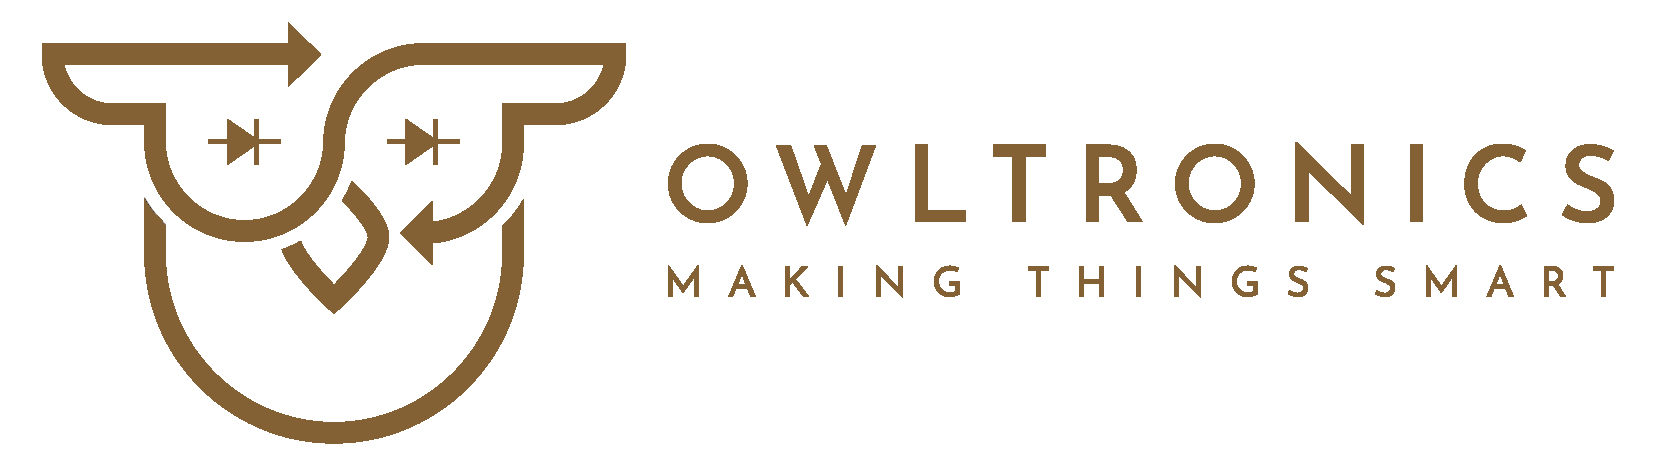 Owltronics